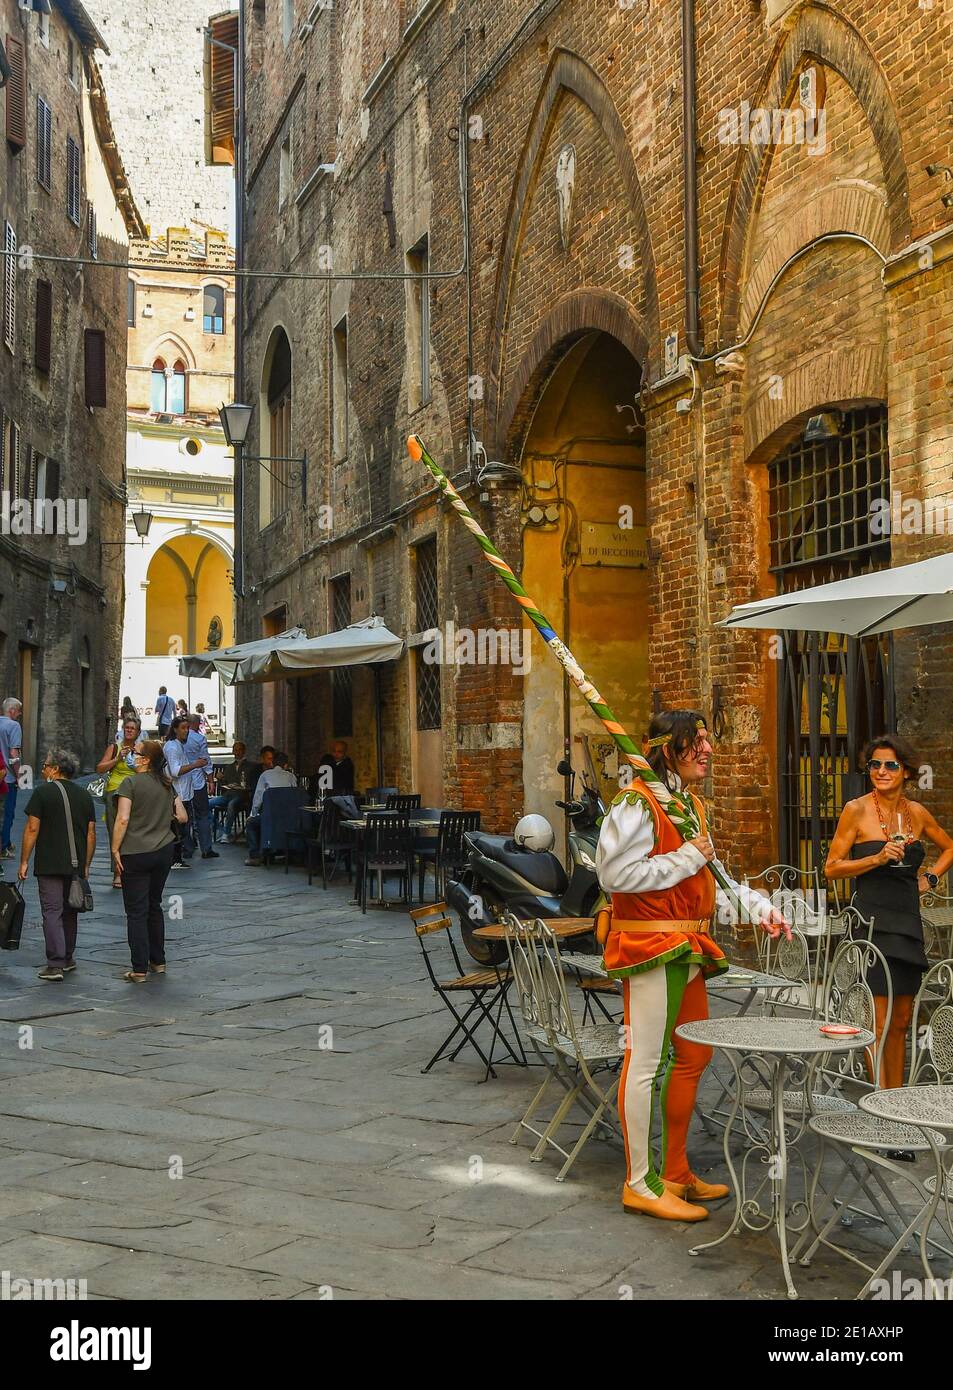 Jeune homme vêtu du costume typique de la Contrada della Selva dans la via Diacceto, une ruelle étroite dans la vieille ville de Sienne, Toscane, Italie Banque D'Images